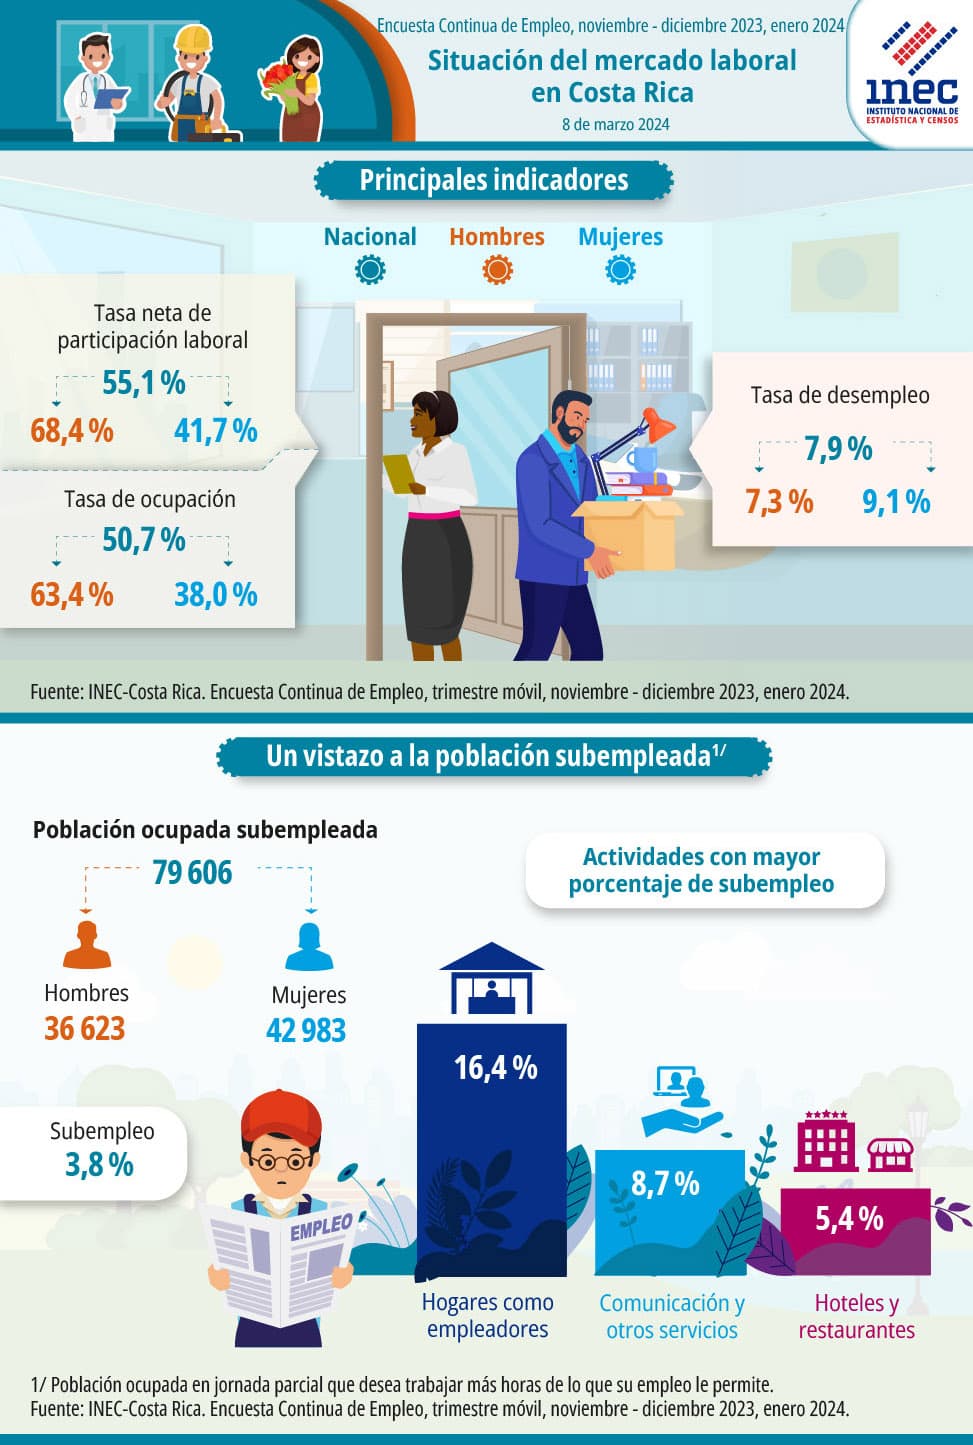 Infografía. Situación del mercado laboral en Costa Rica. Encuesta Continua de Empleo. Trimestre móvil noviembre, diciembre 2023 y enero 2024.